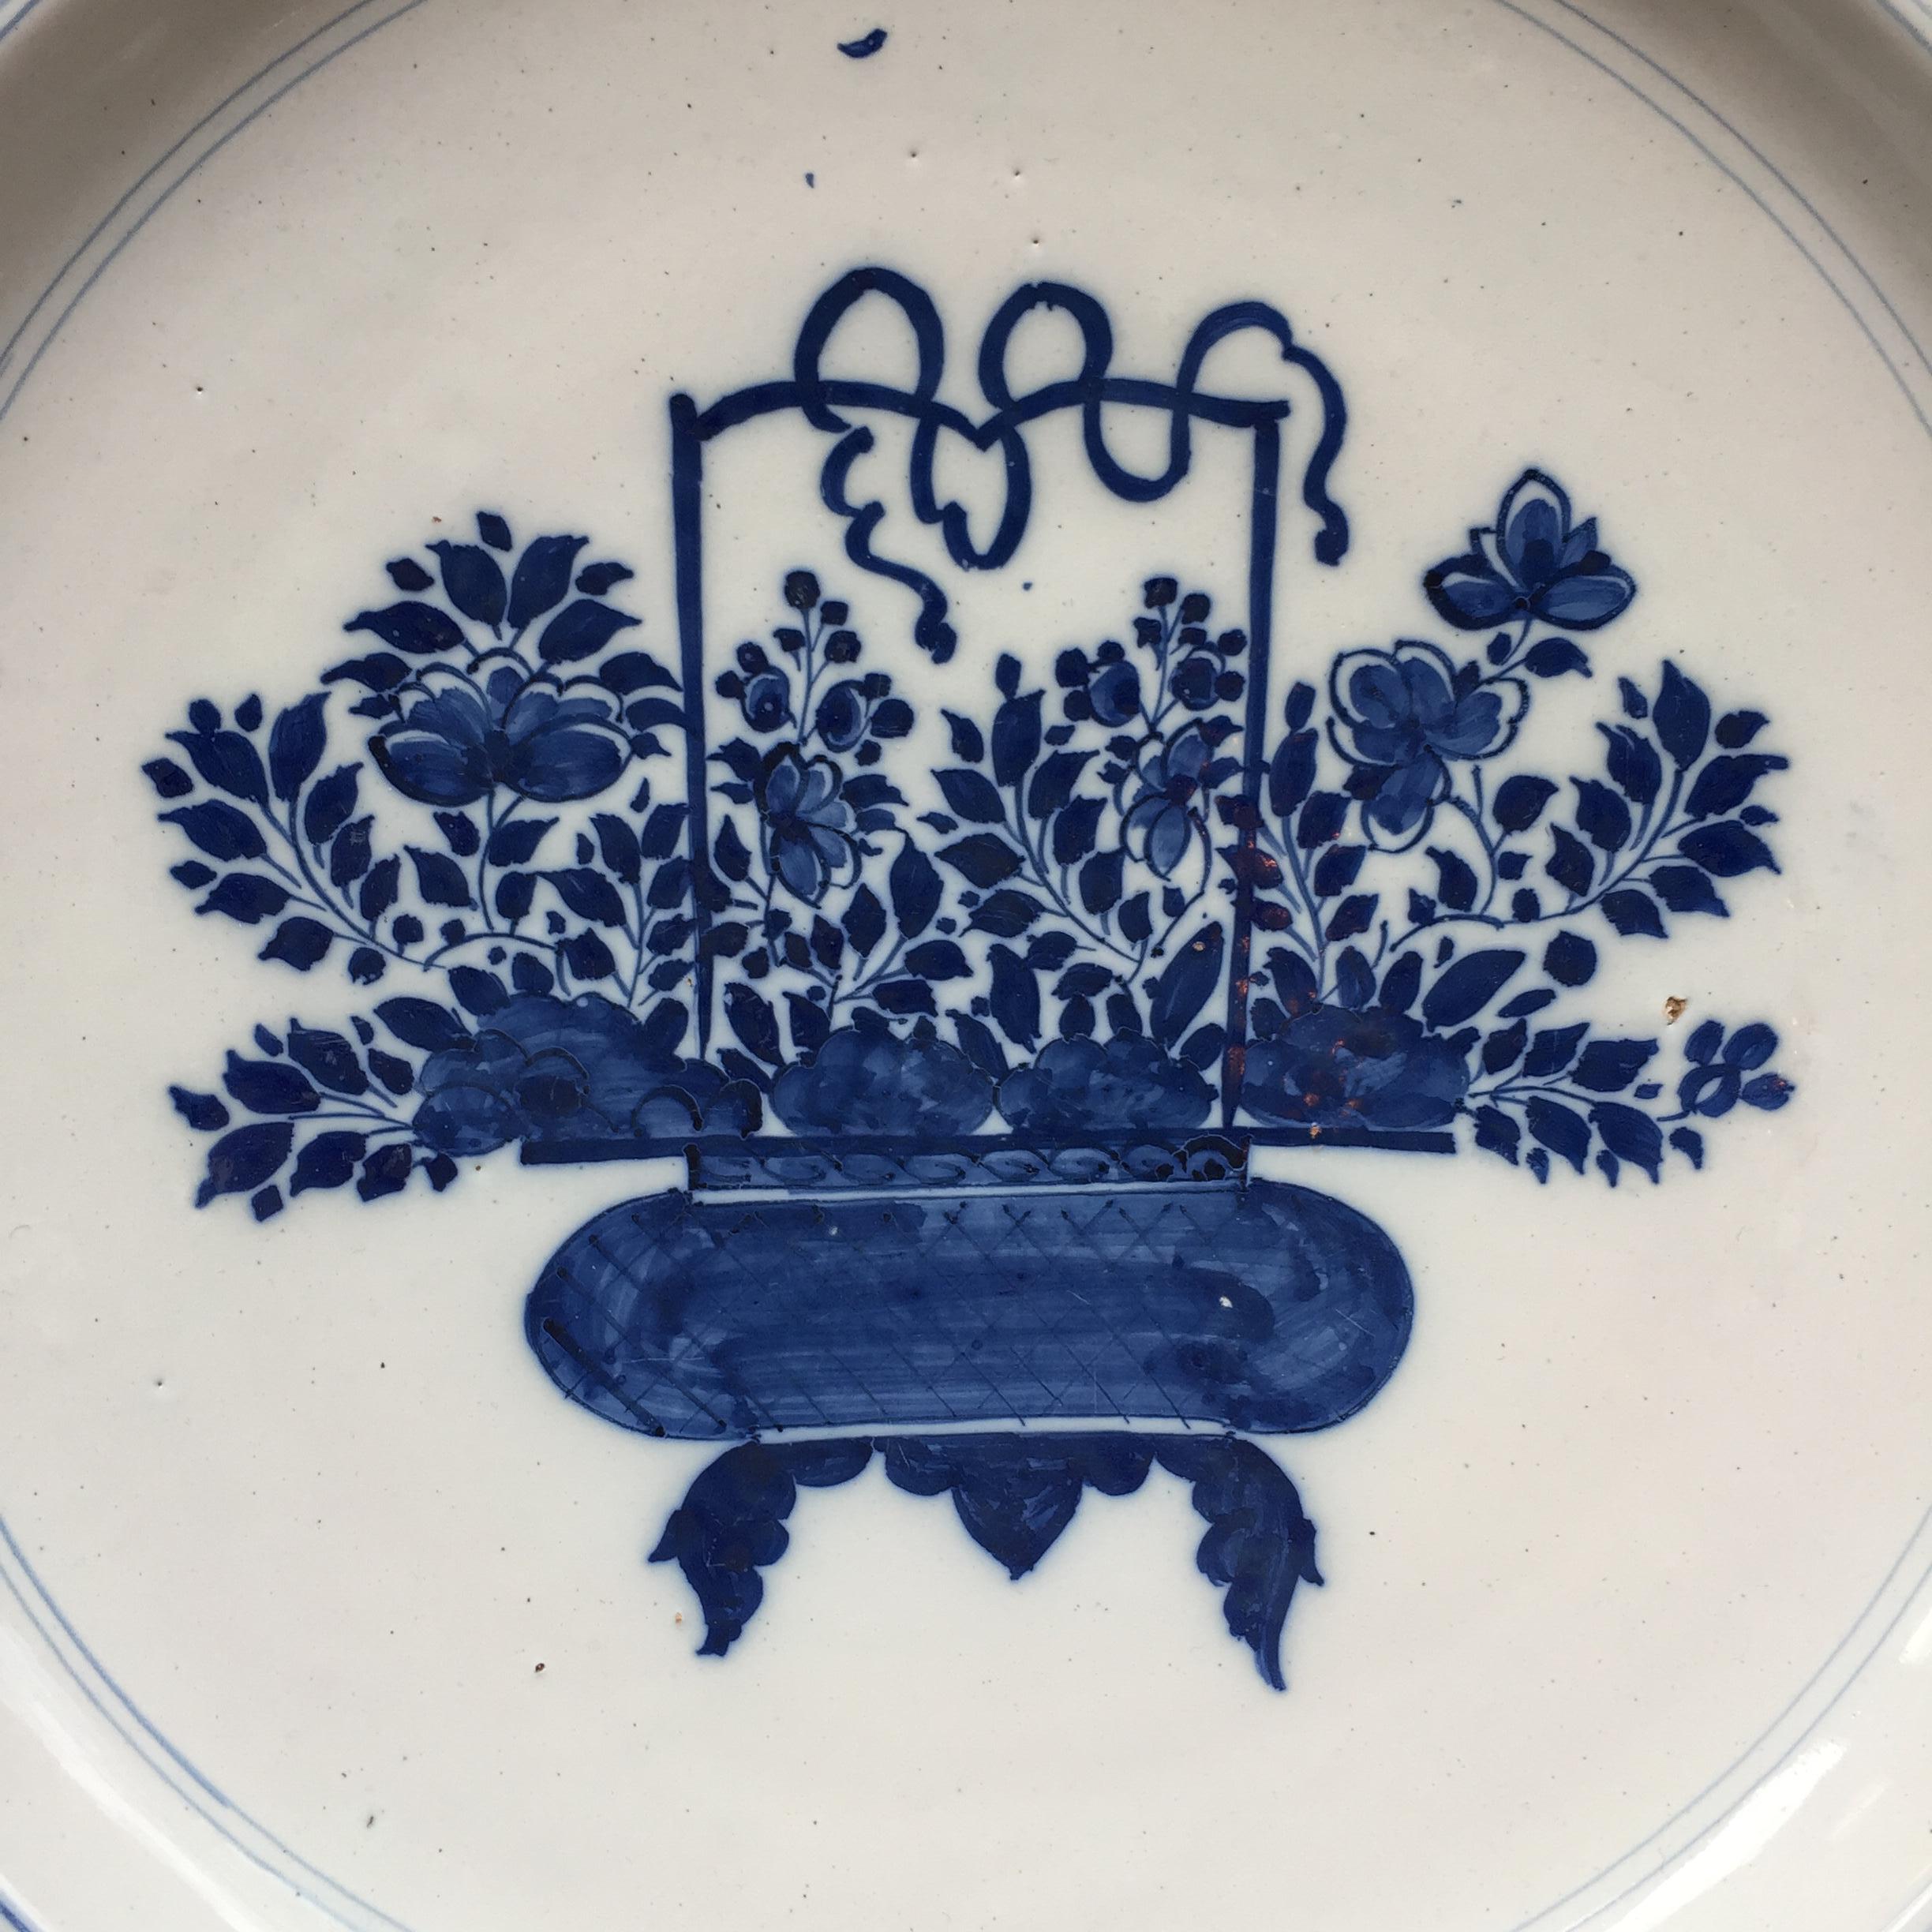 Ville : Delft
Atelier : Inconnu
Date : circa 1700 - 1750

Une fine assiette bleue et blanche à décor d'un panier de fleurs chinoises.
Inspiré de la porcelaine chinoise Kangxi.
Avec une petite bordure décorée de branches.

Non marqué

Provenance :